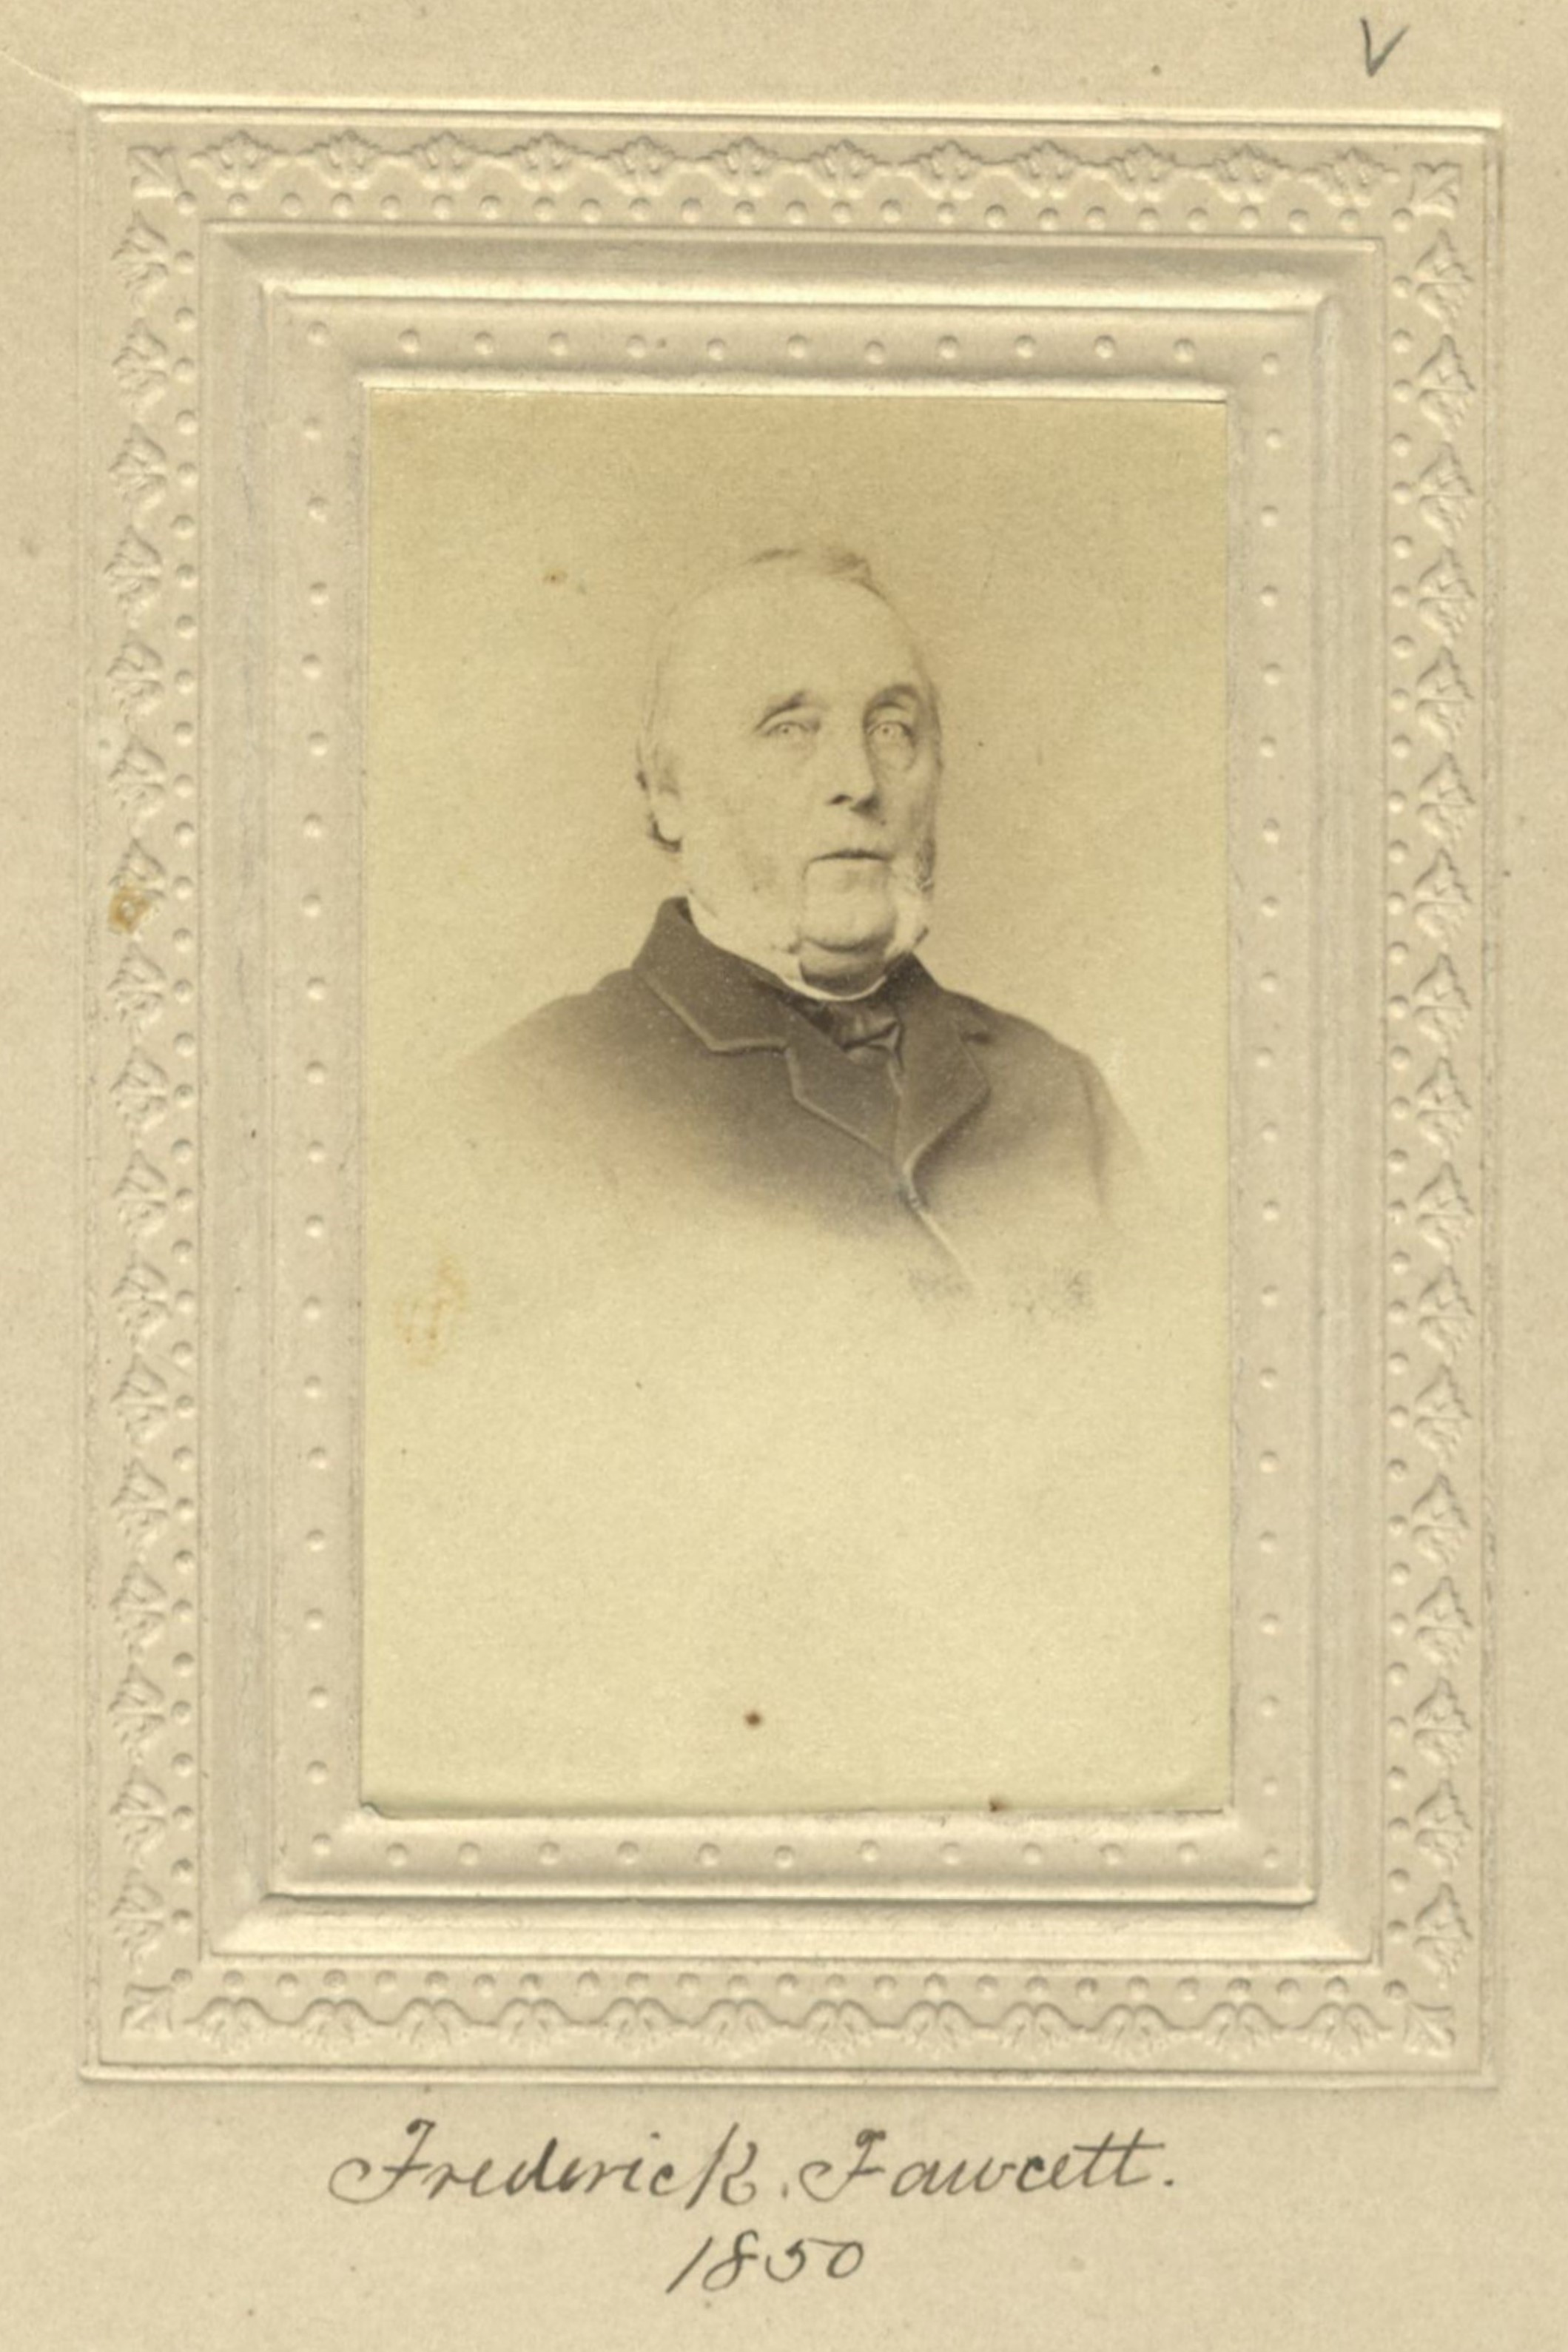 Member portrait of Frederick Fawcett